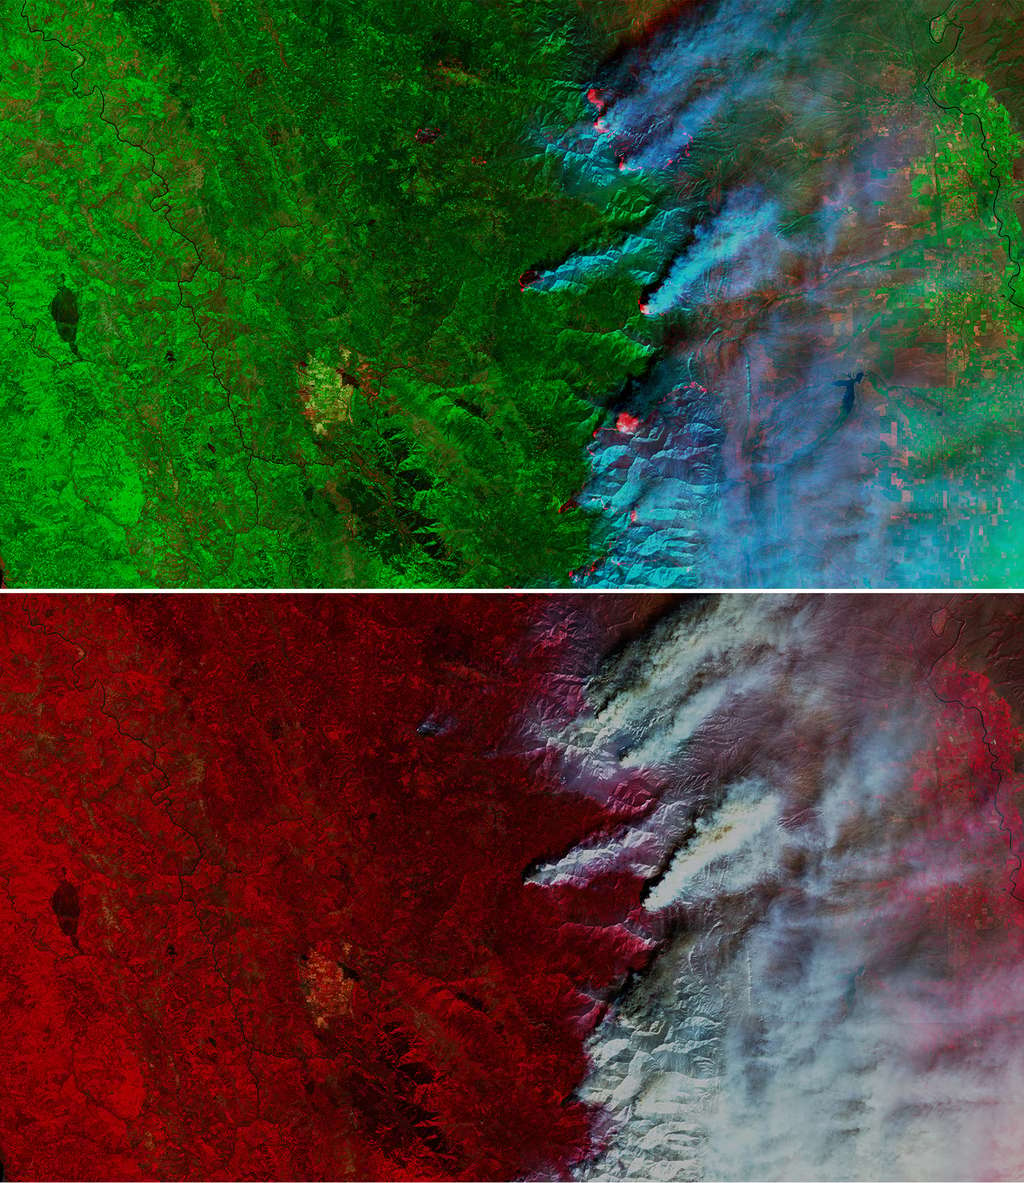 Les incendies au nord de la Californie vus par le satellite Sentinel-2 le 20 août 2020 dans différentes longueurs d'onde. En haut, avec la bande SWIR mettant en évidence les feux actifs et facilitant l’analyse des images malgré la fumée. En bas, avec la bande proche infrarouge permettant de délimiter les zones brûlées. © ESA, Copernicus, Commission européenne